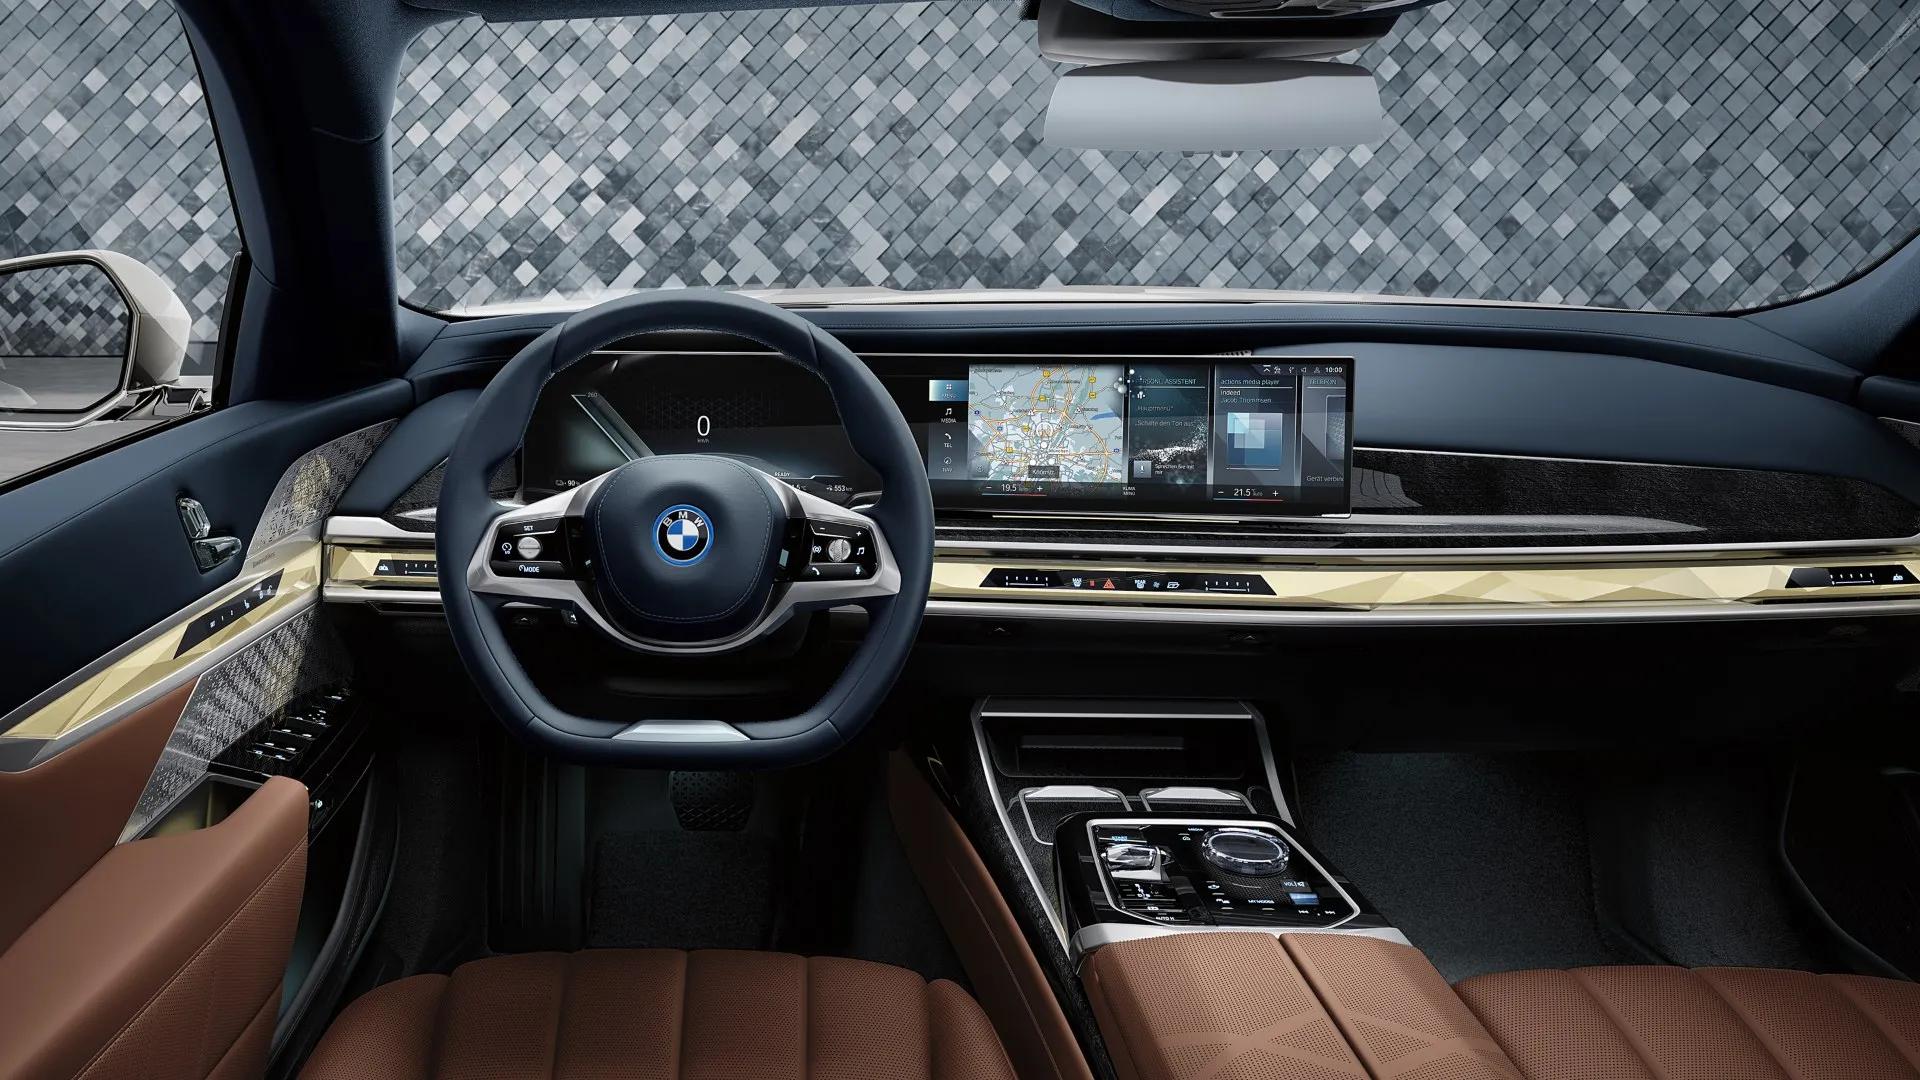 BMW ofrece asientos calefactables por suscripción a clientes que ya los habían contratado